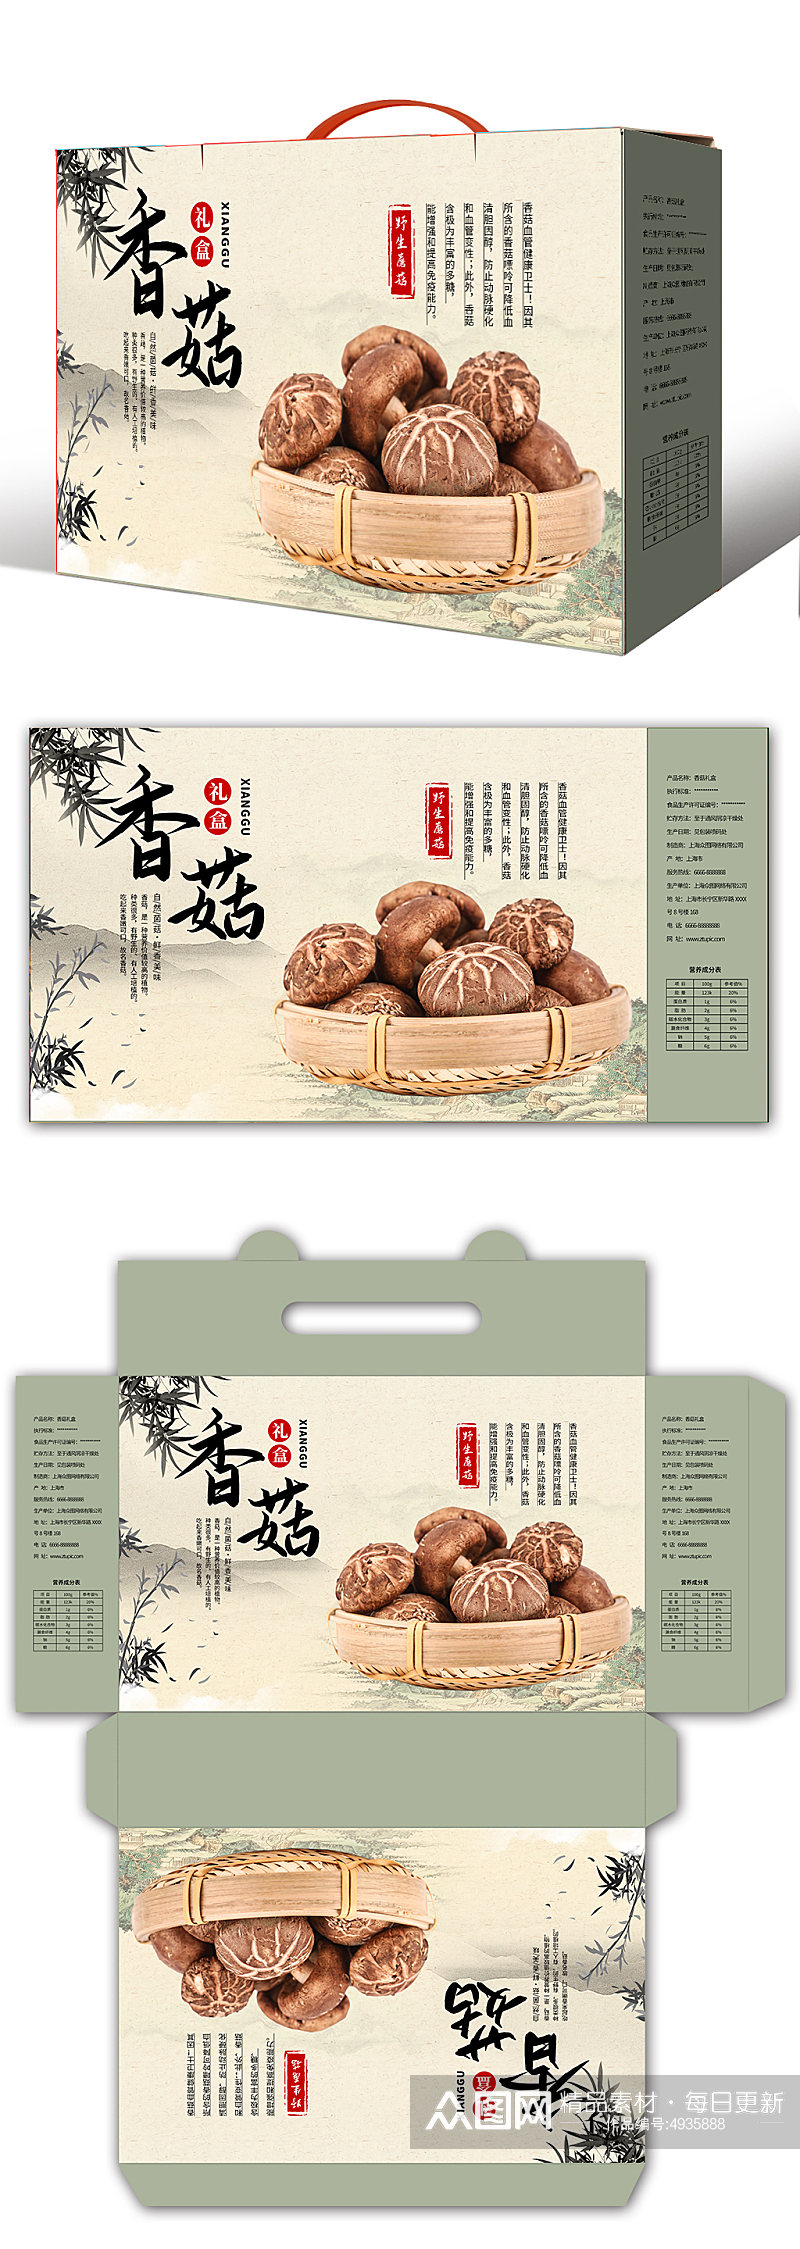 中国风山珍香菇蘑菇农产品礼盒包装设计素材